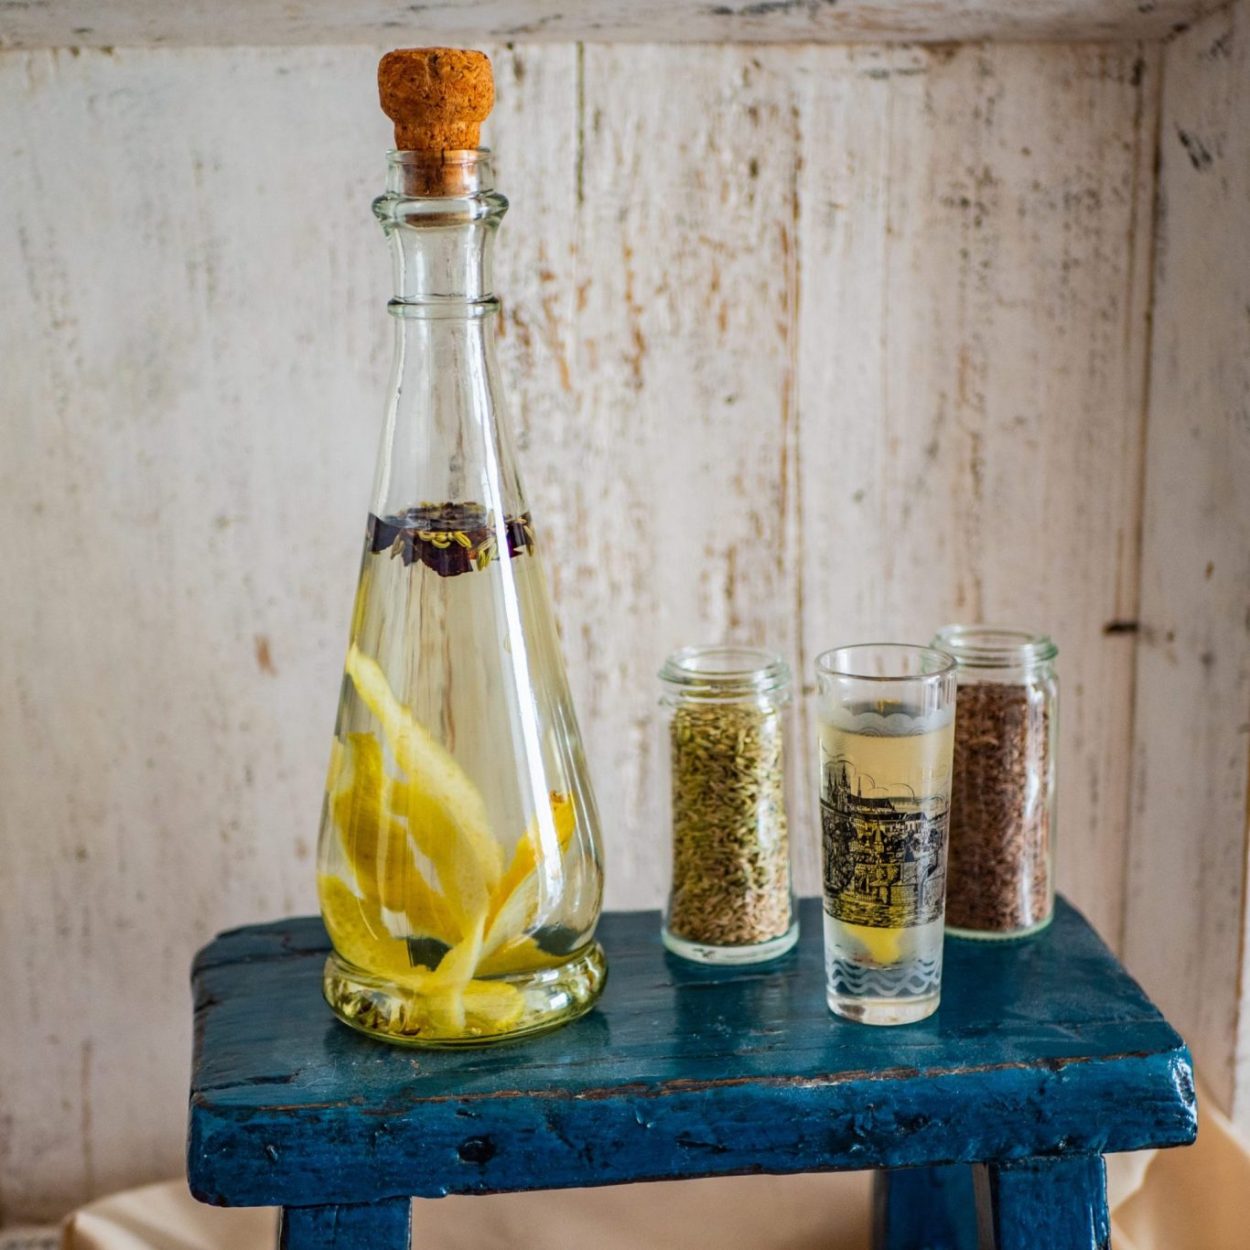 Snaps maison - Vodka infusée aux épices et au citron - Recette suédoise